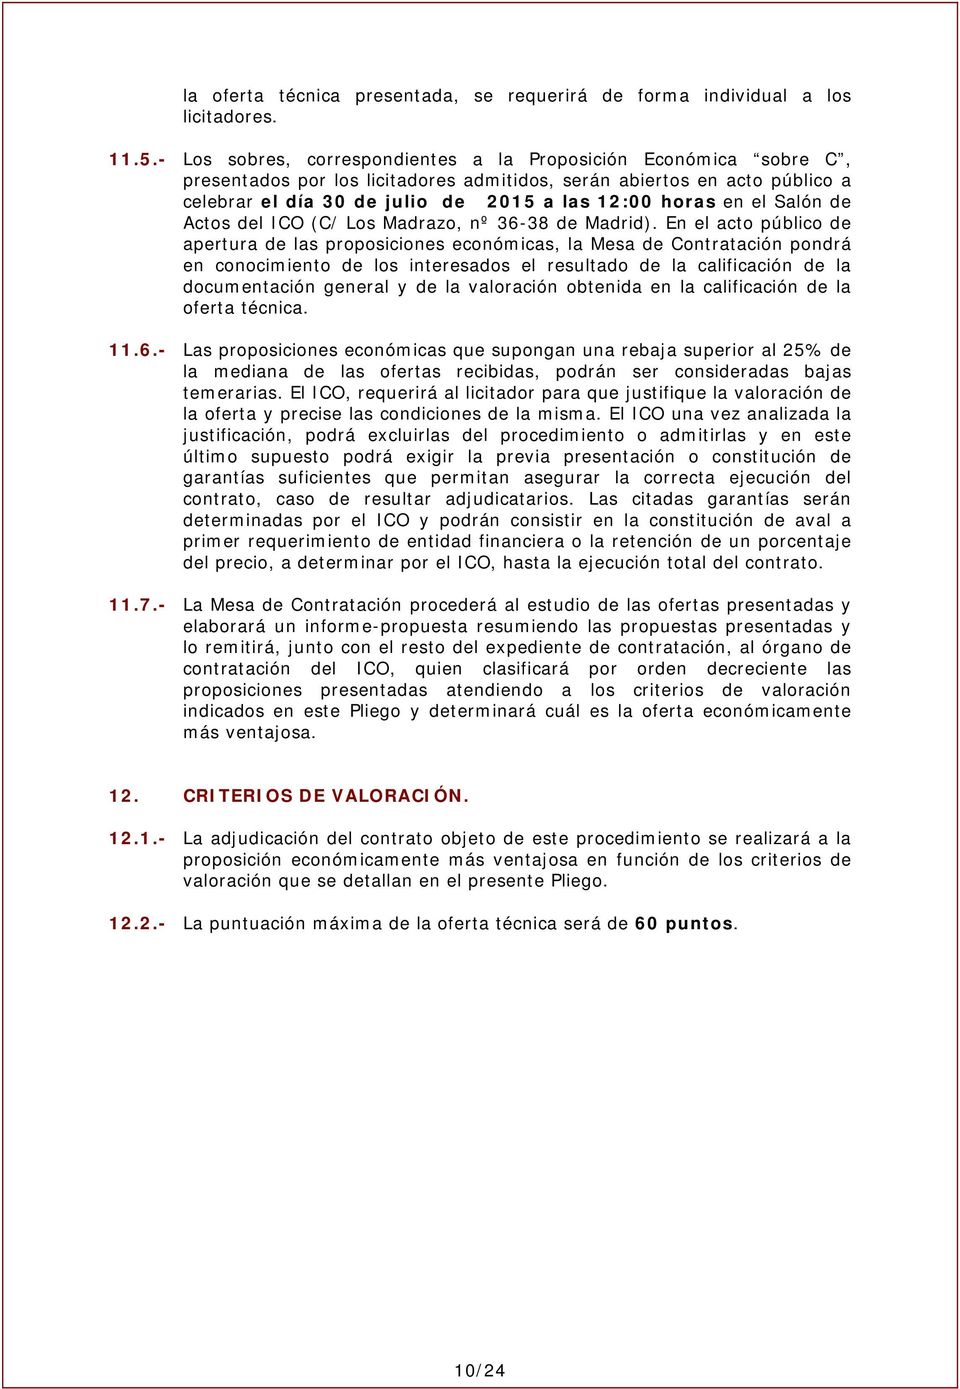 el Salón de Actos del ICO (C/ Los Madrazo, nº 36-38 de Madrid).